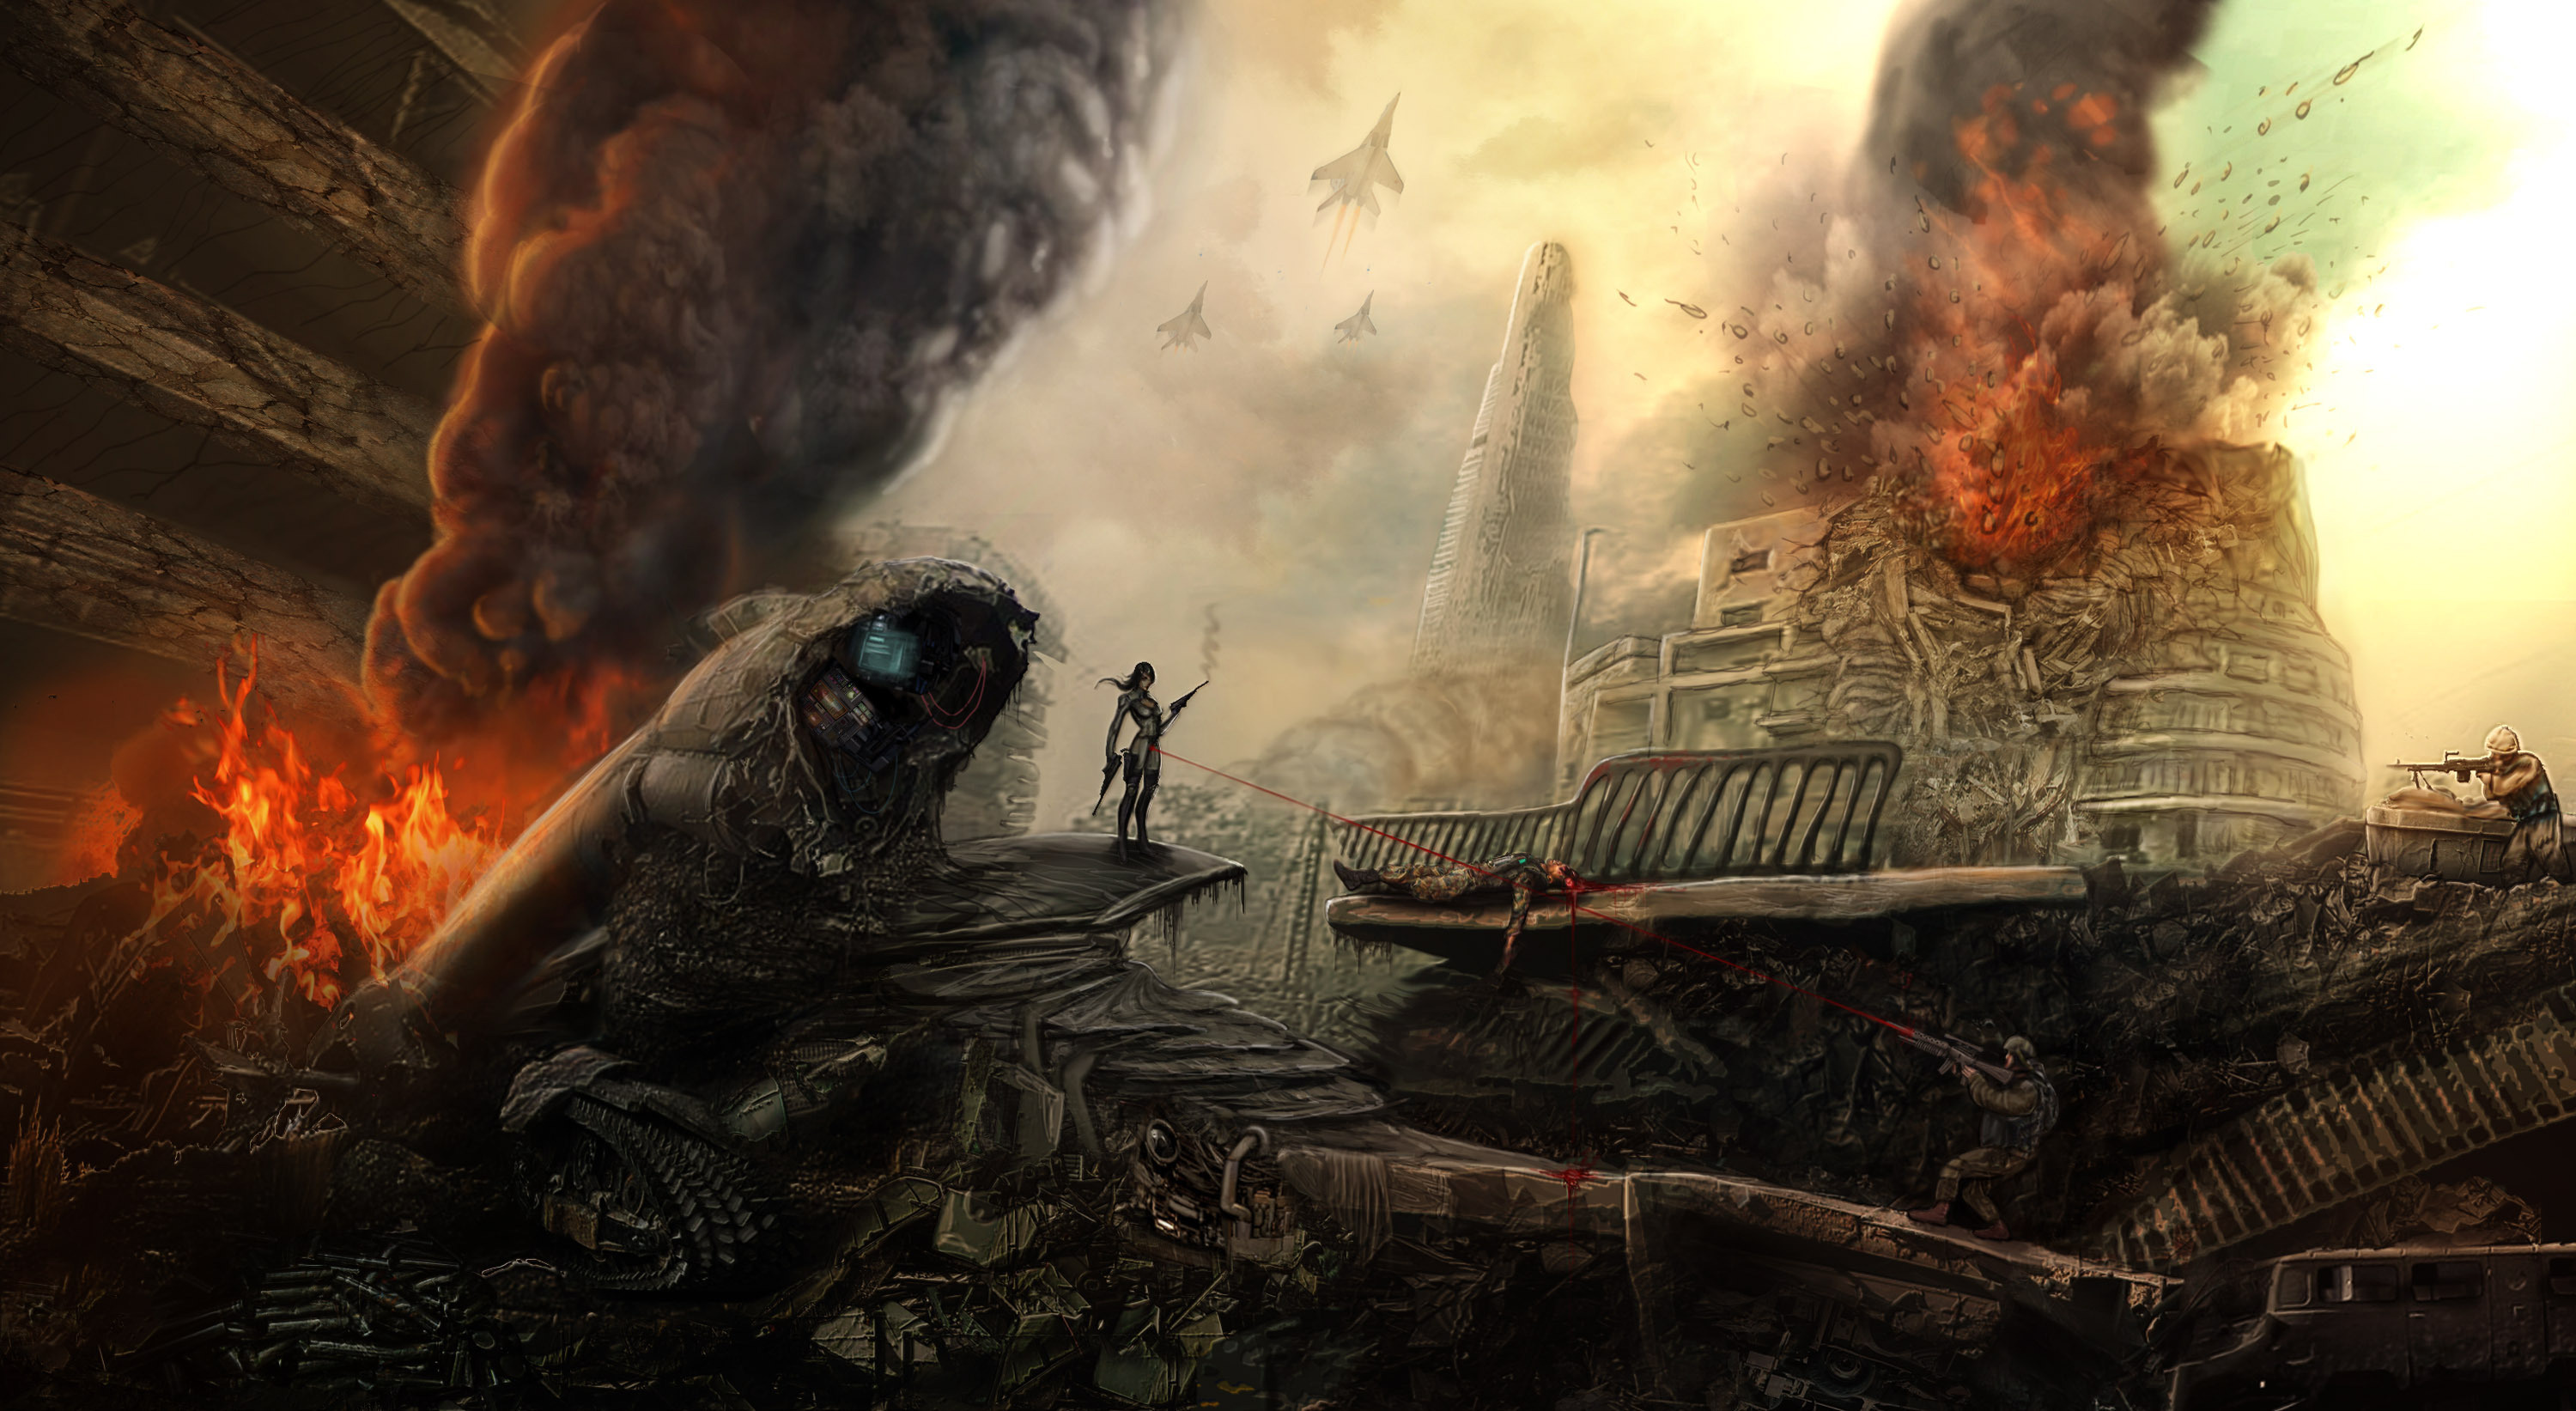 fondo de pantalla de batalla,juego de acción y aventura,cg artwork,juego de pc,ilustración,juegos